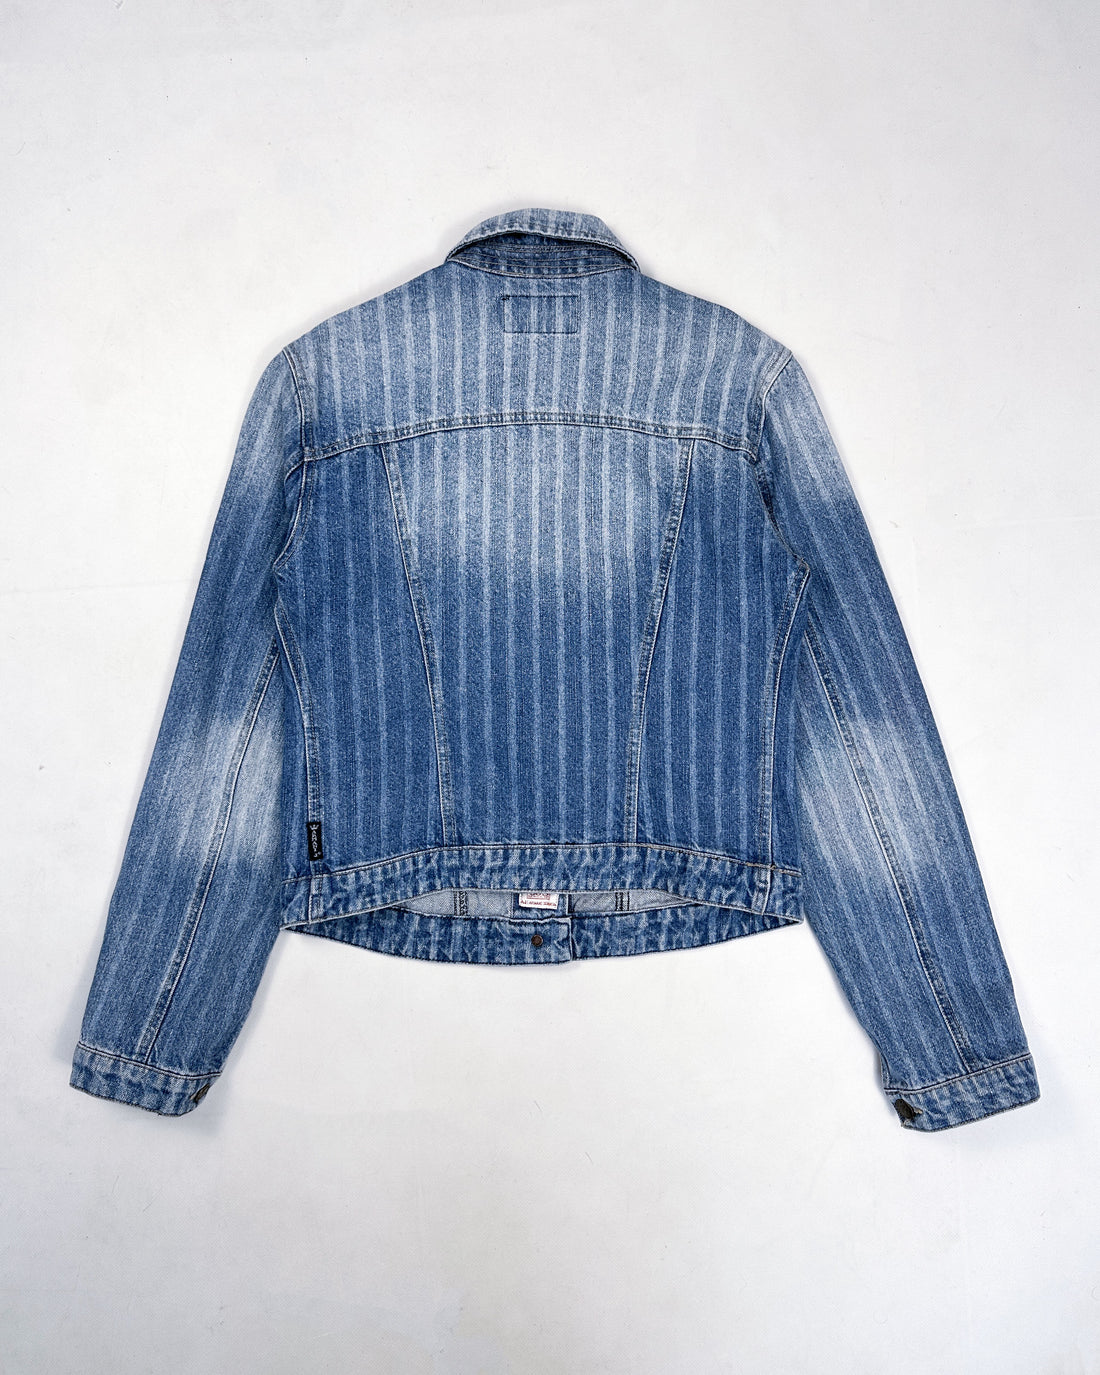 Armani Washed Indigo Denim Jacket 1990's